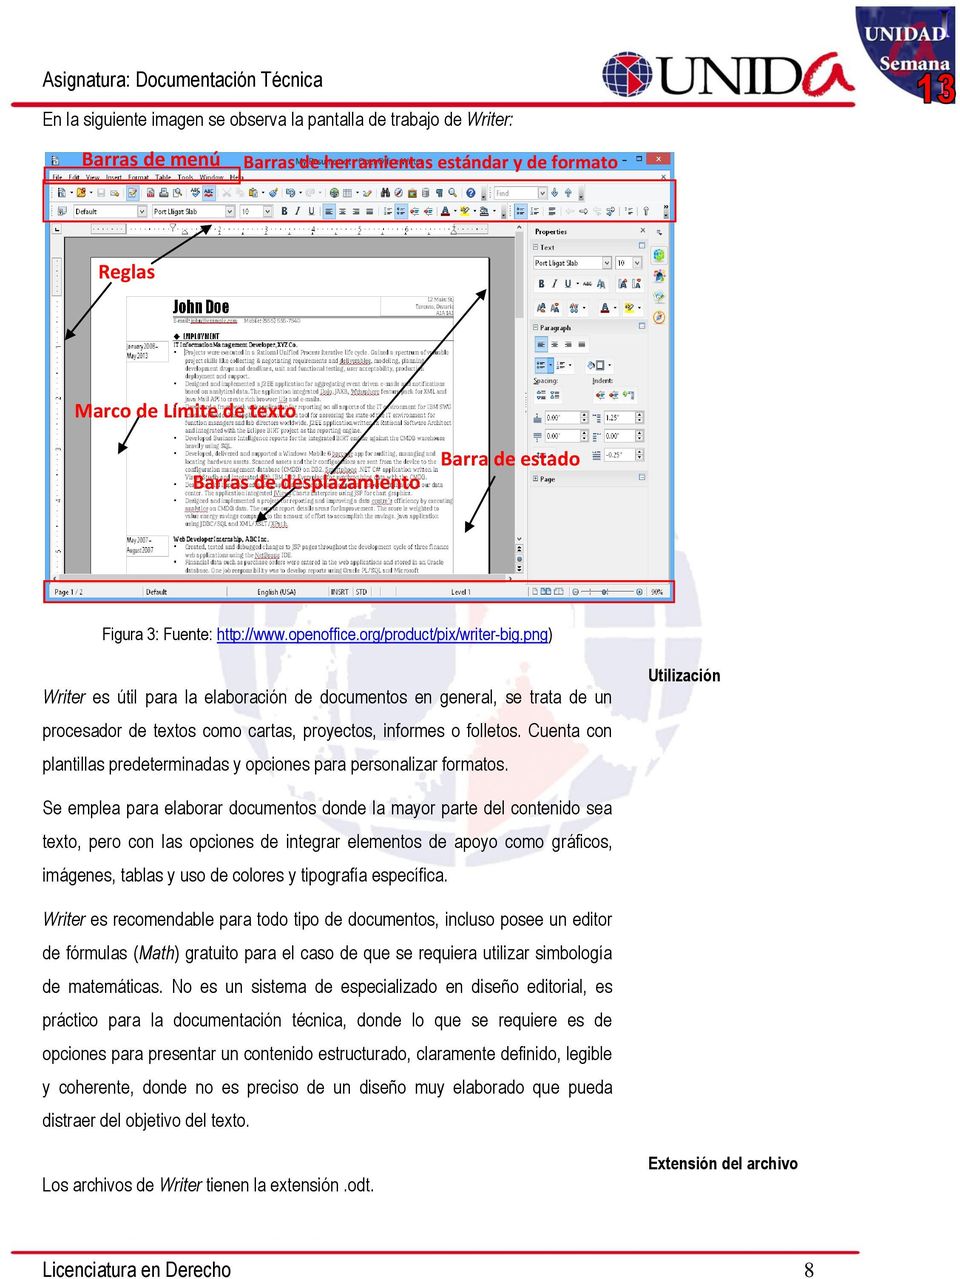 png) Writer es útil para la elaboración de documentos en general, se trata de un procesador de textos como cartas, proyectos, informes o folletos.